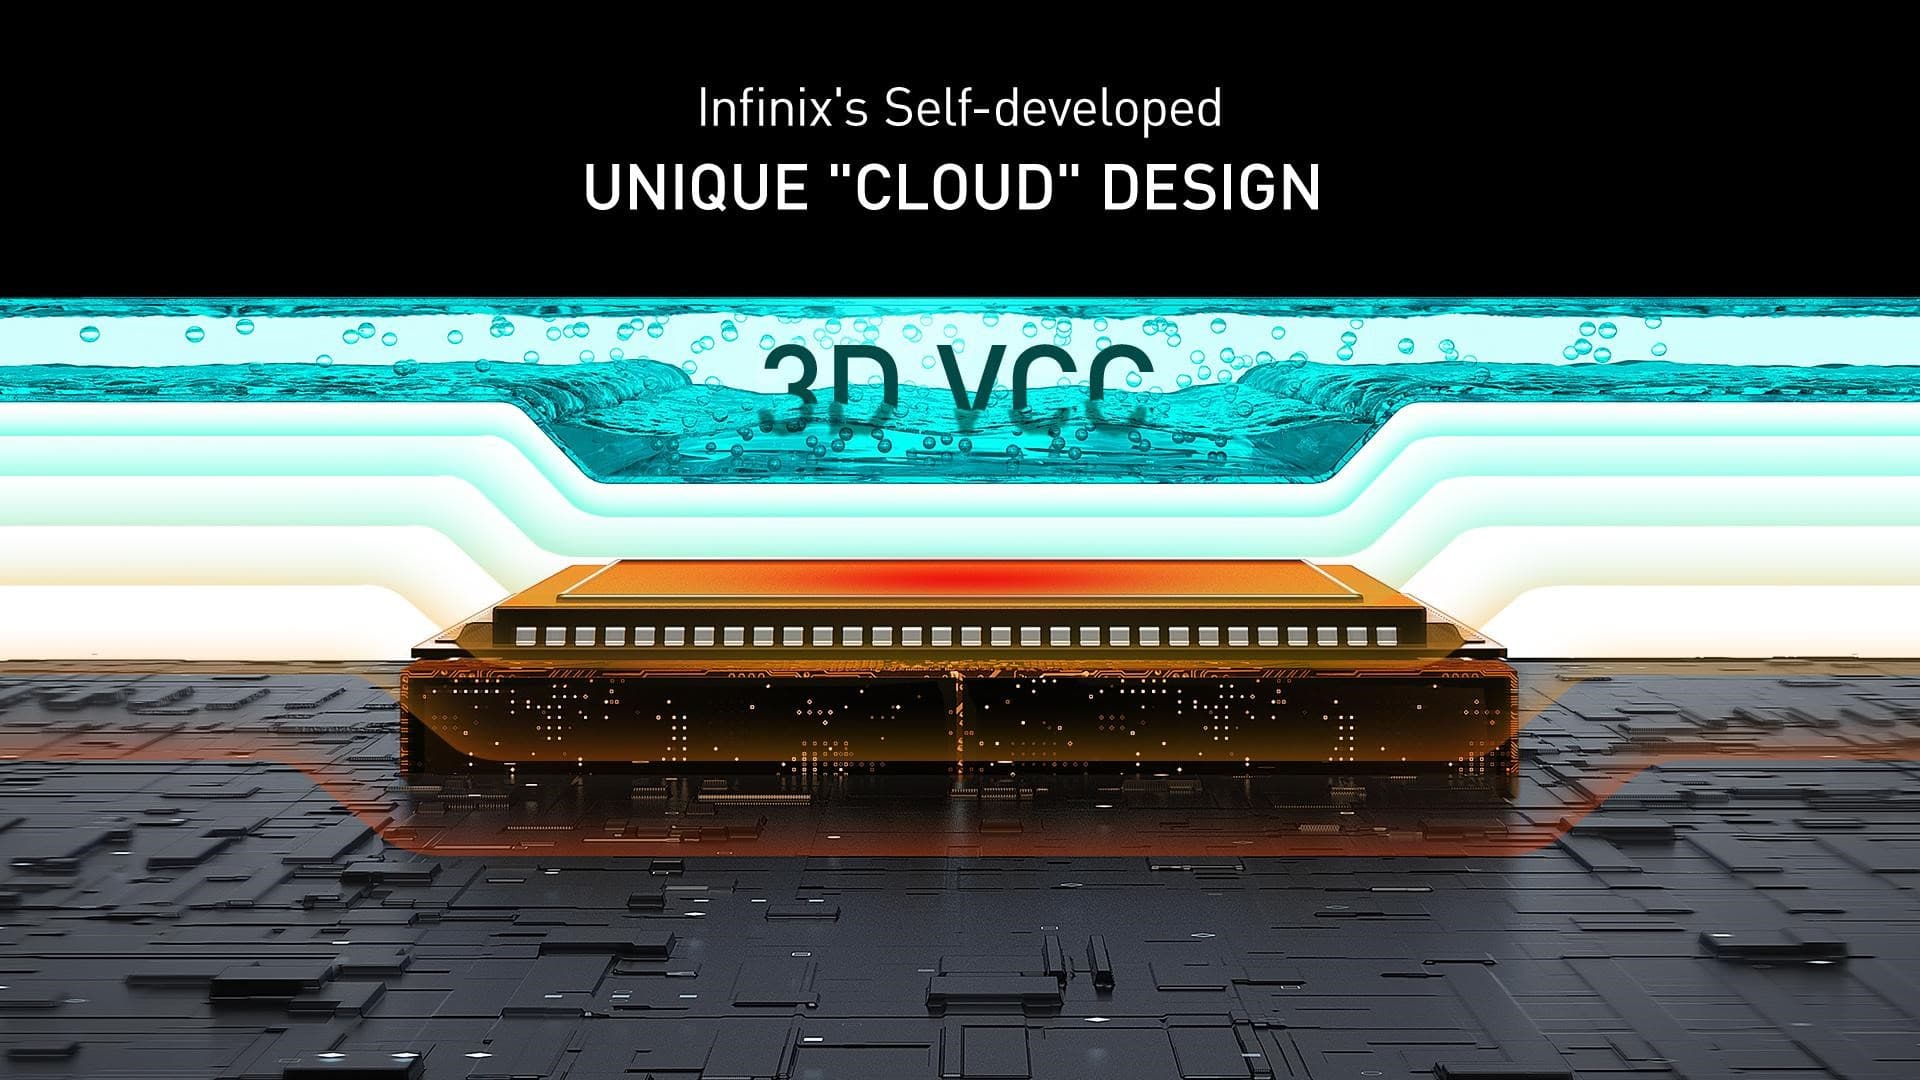 3D Vapor Cloud Chamber 3D VCC